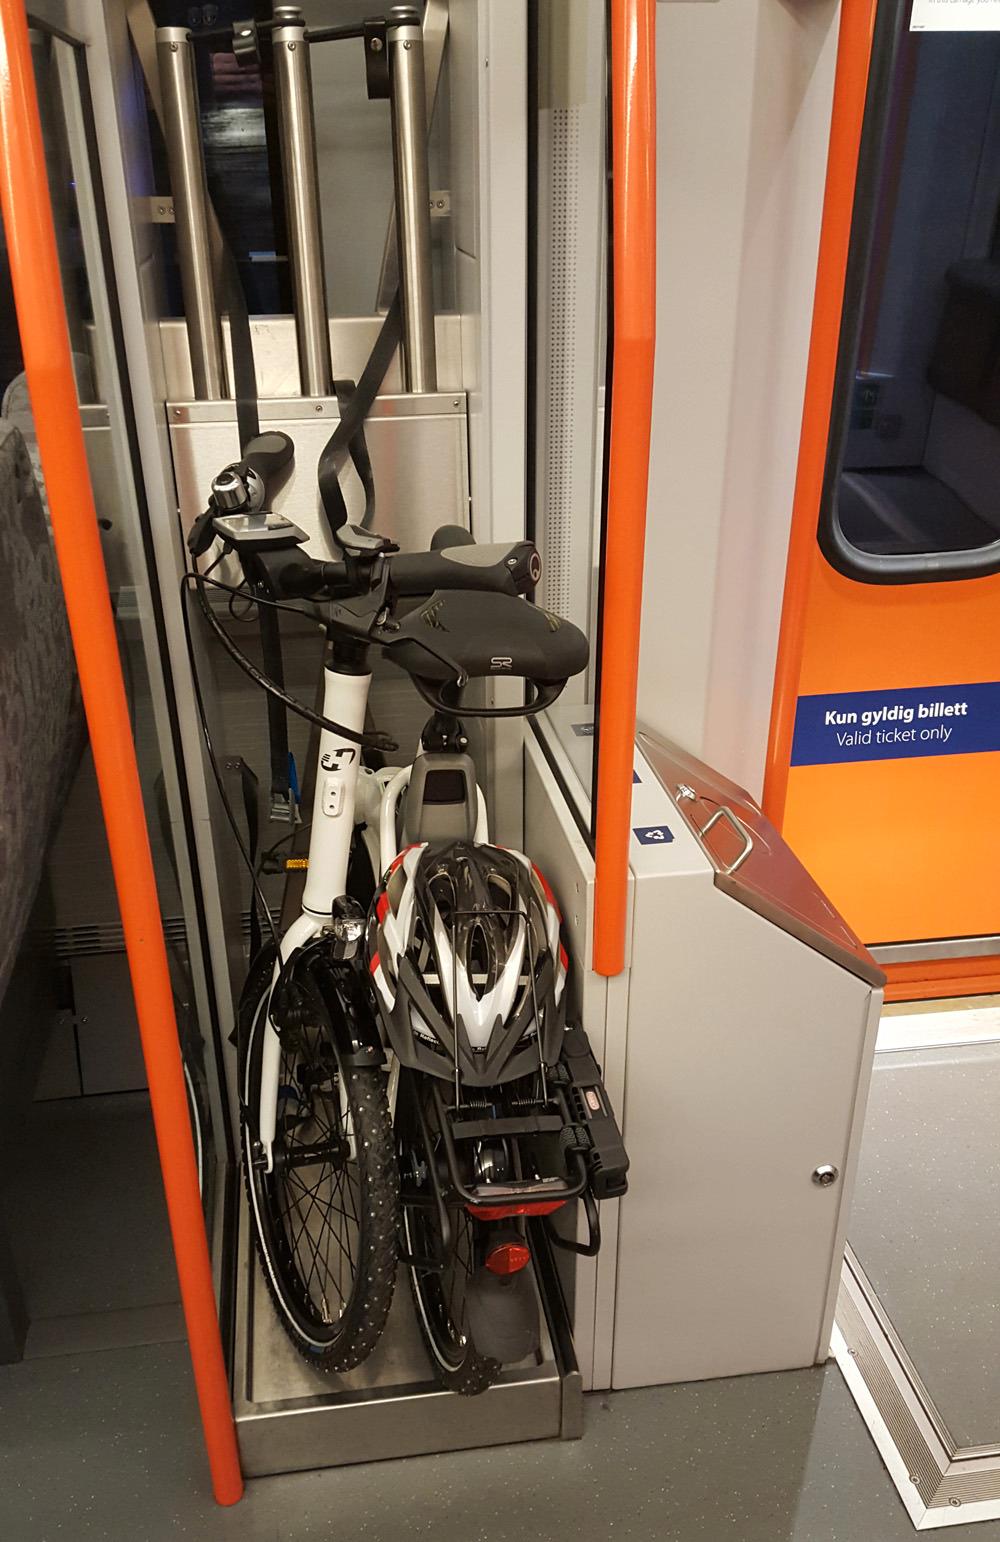 På toget slapp vi å betale ekstra for å ha med sykkel. Foto: Alexander Tøgard, Tek.no